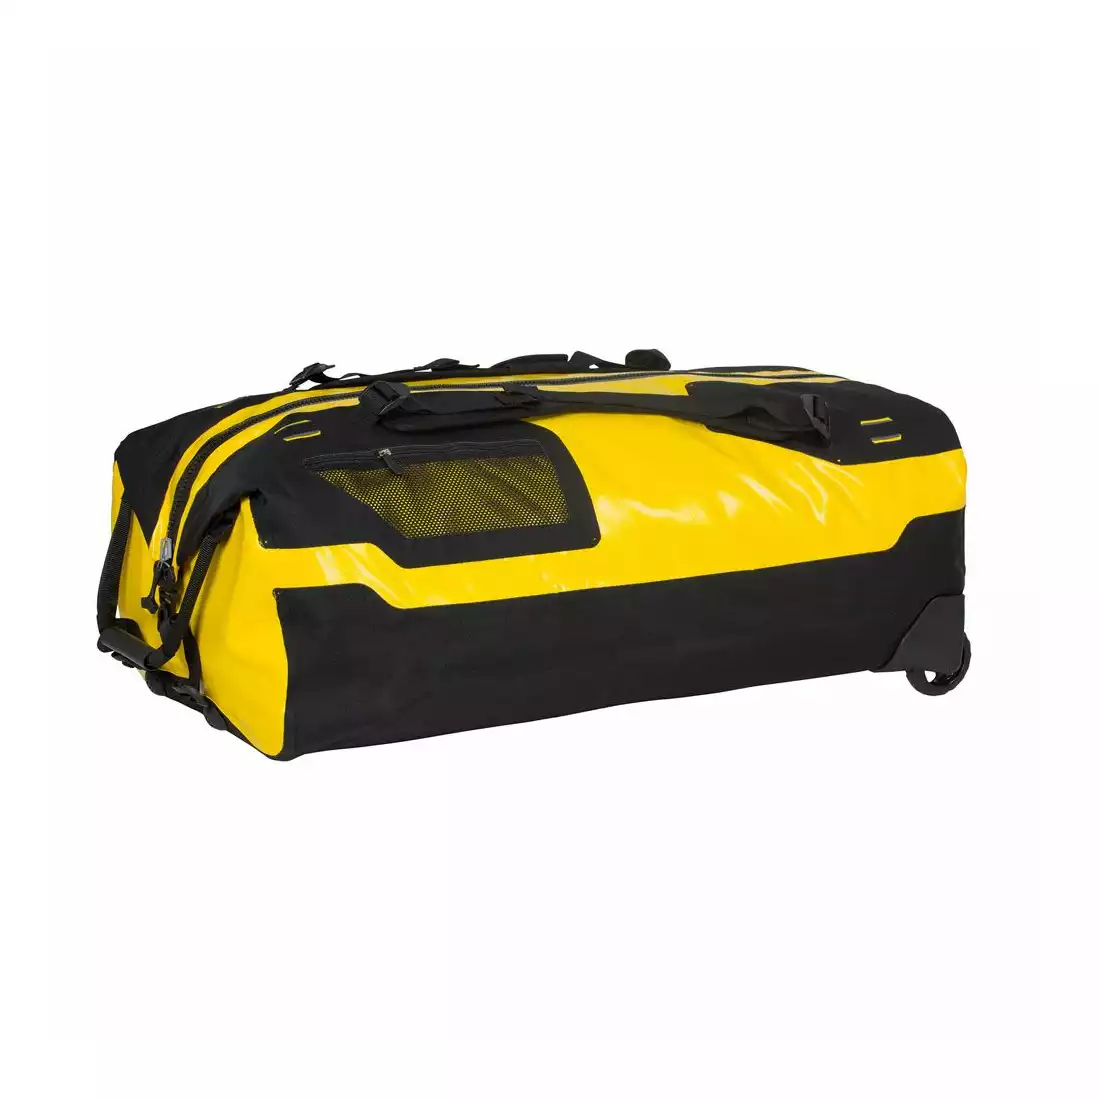 ORTLIEB woodporna torba na kółkach / plecak DUFFLE RS SUN YELLOW-BLACK 110L O O-K13102